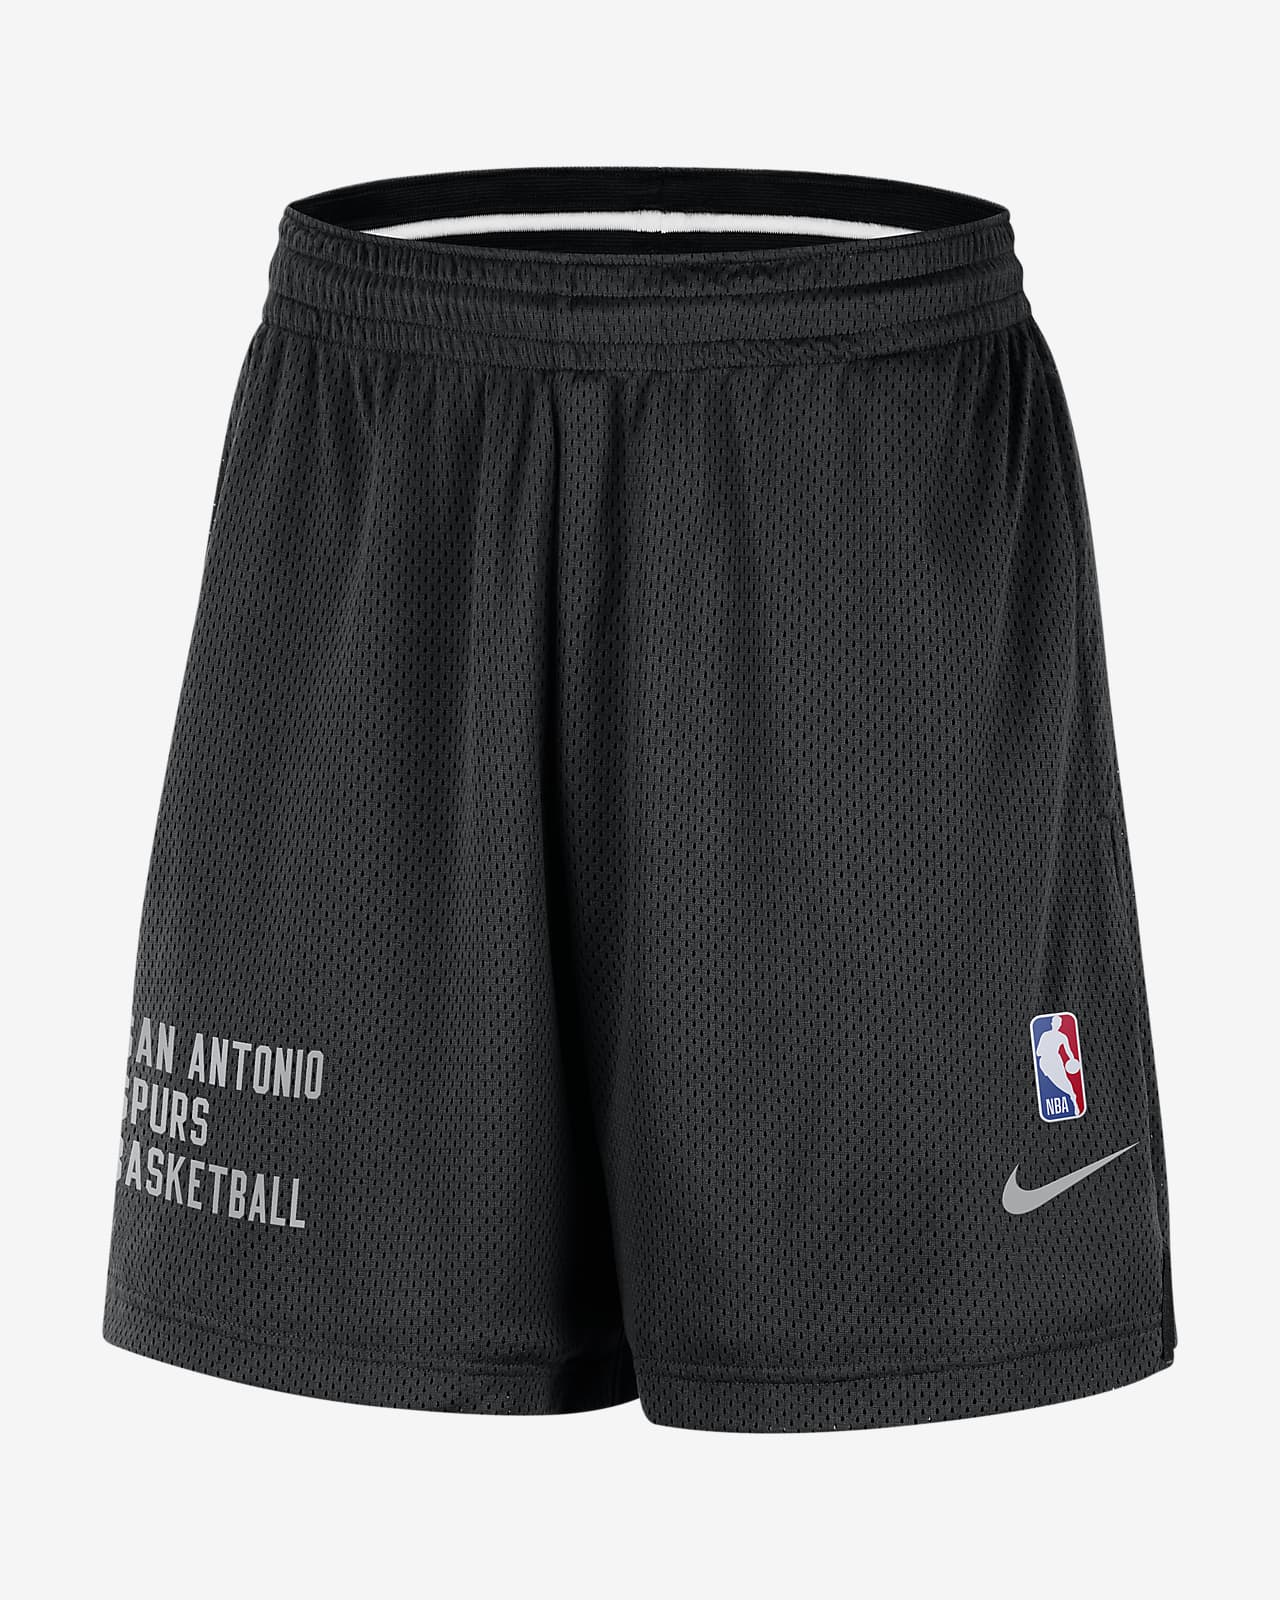 Shorts de malla Nike de la NBA para hombre San Antonio Spurs